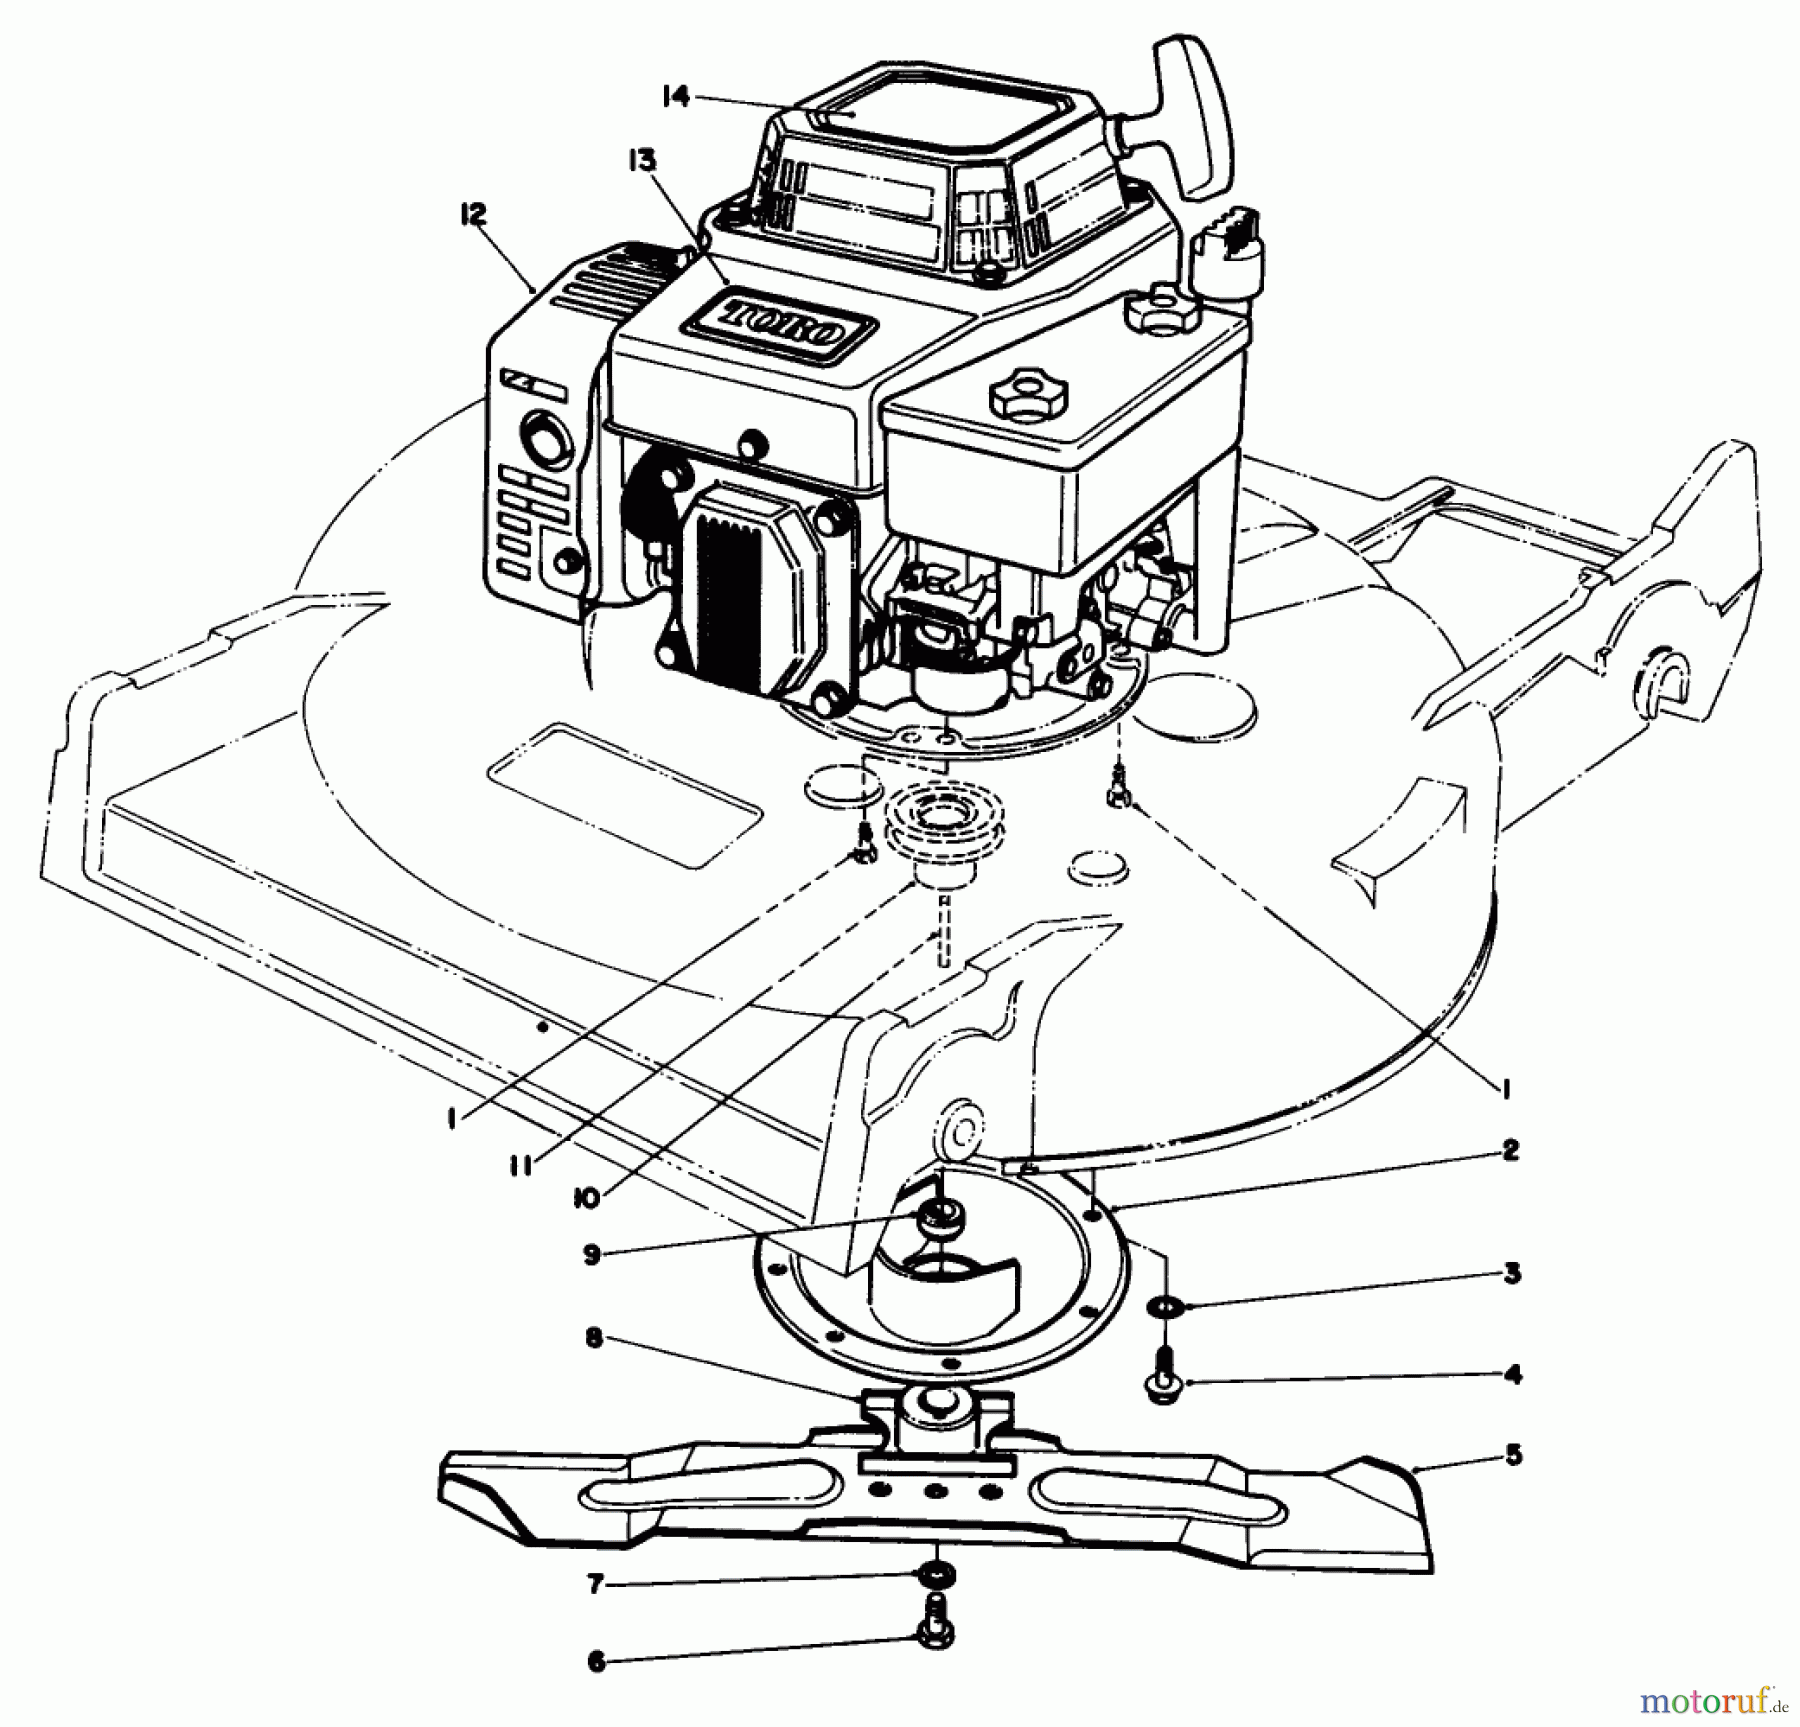  Toro Neu Mowers, Walk-Behind Seite 2 22525 - Toro Lawnmower, 1987 (7000001-7999999) ENGINE ASSEMBLY (MODEL NO. 22621)